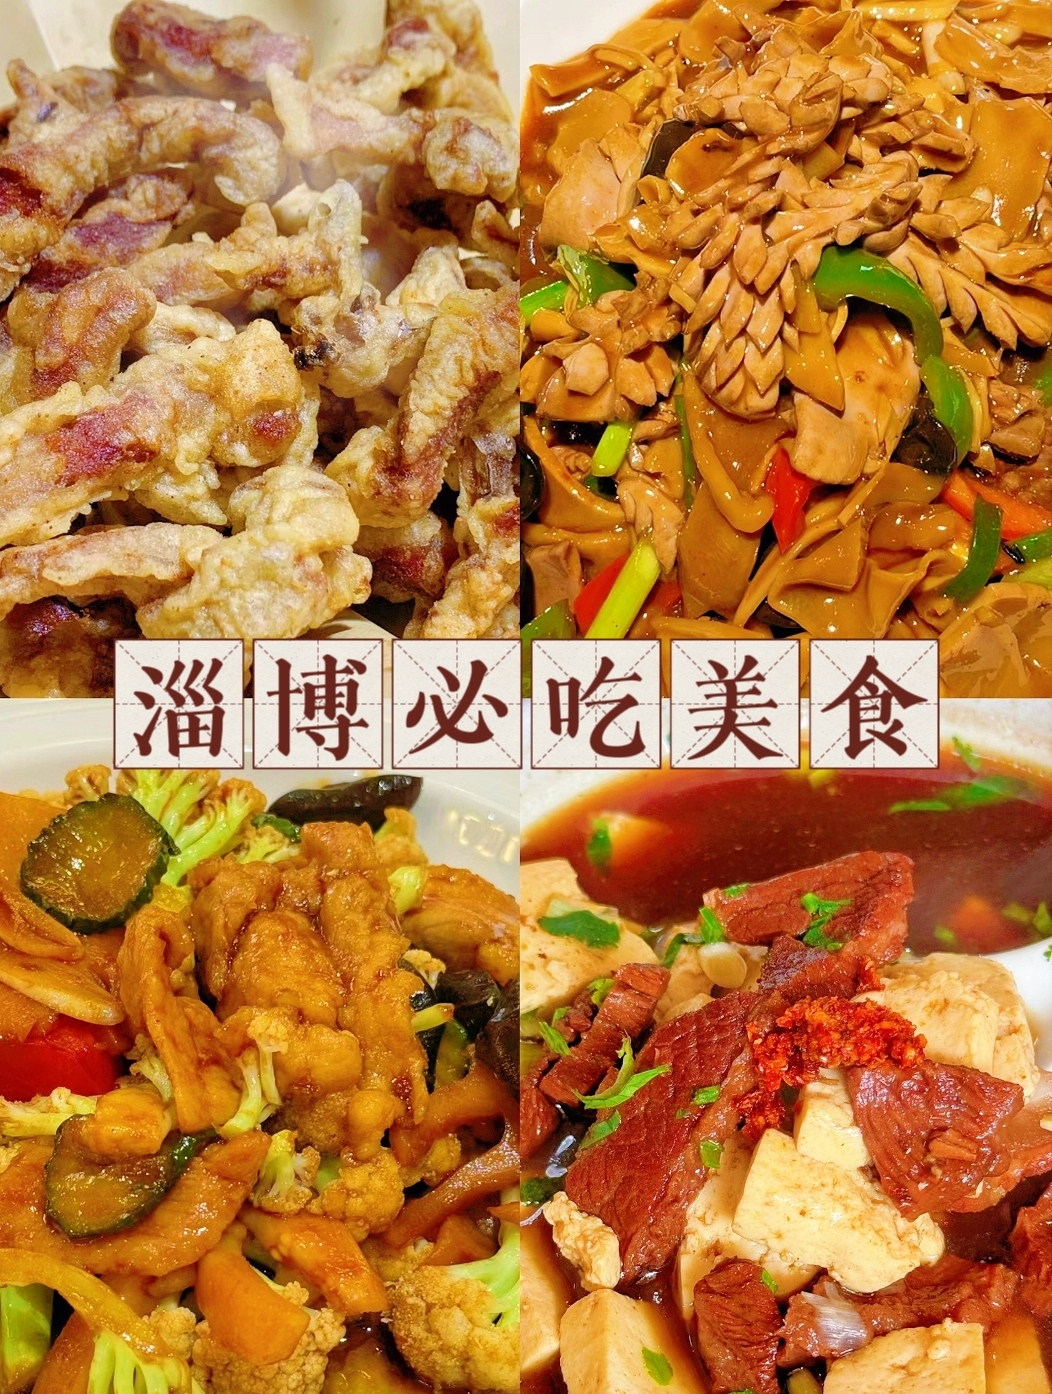 来淄博旅游必吃的12道美食🔥🔥这里真的不止是烧烤